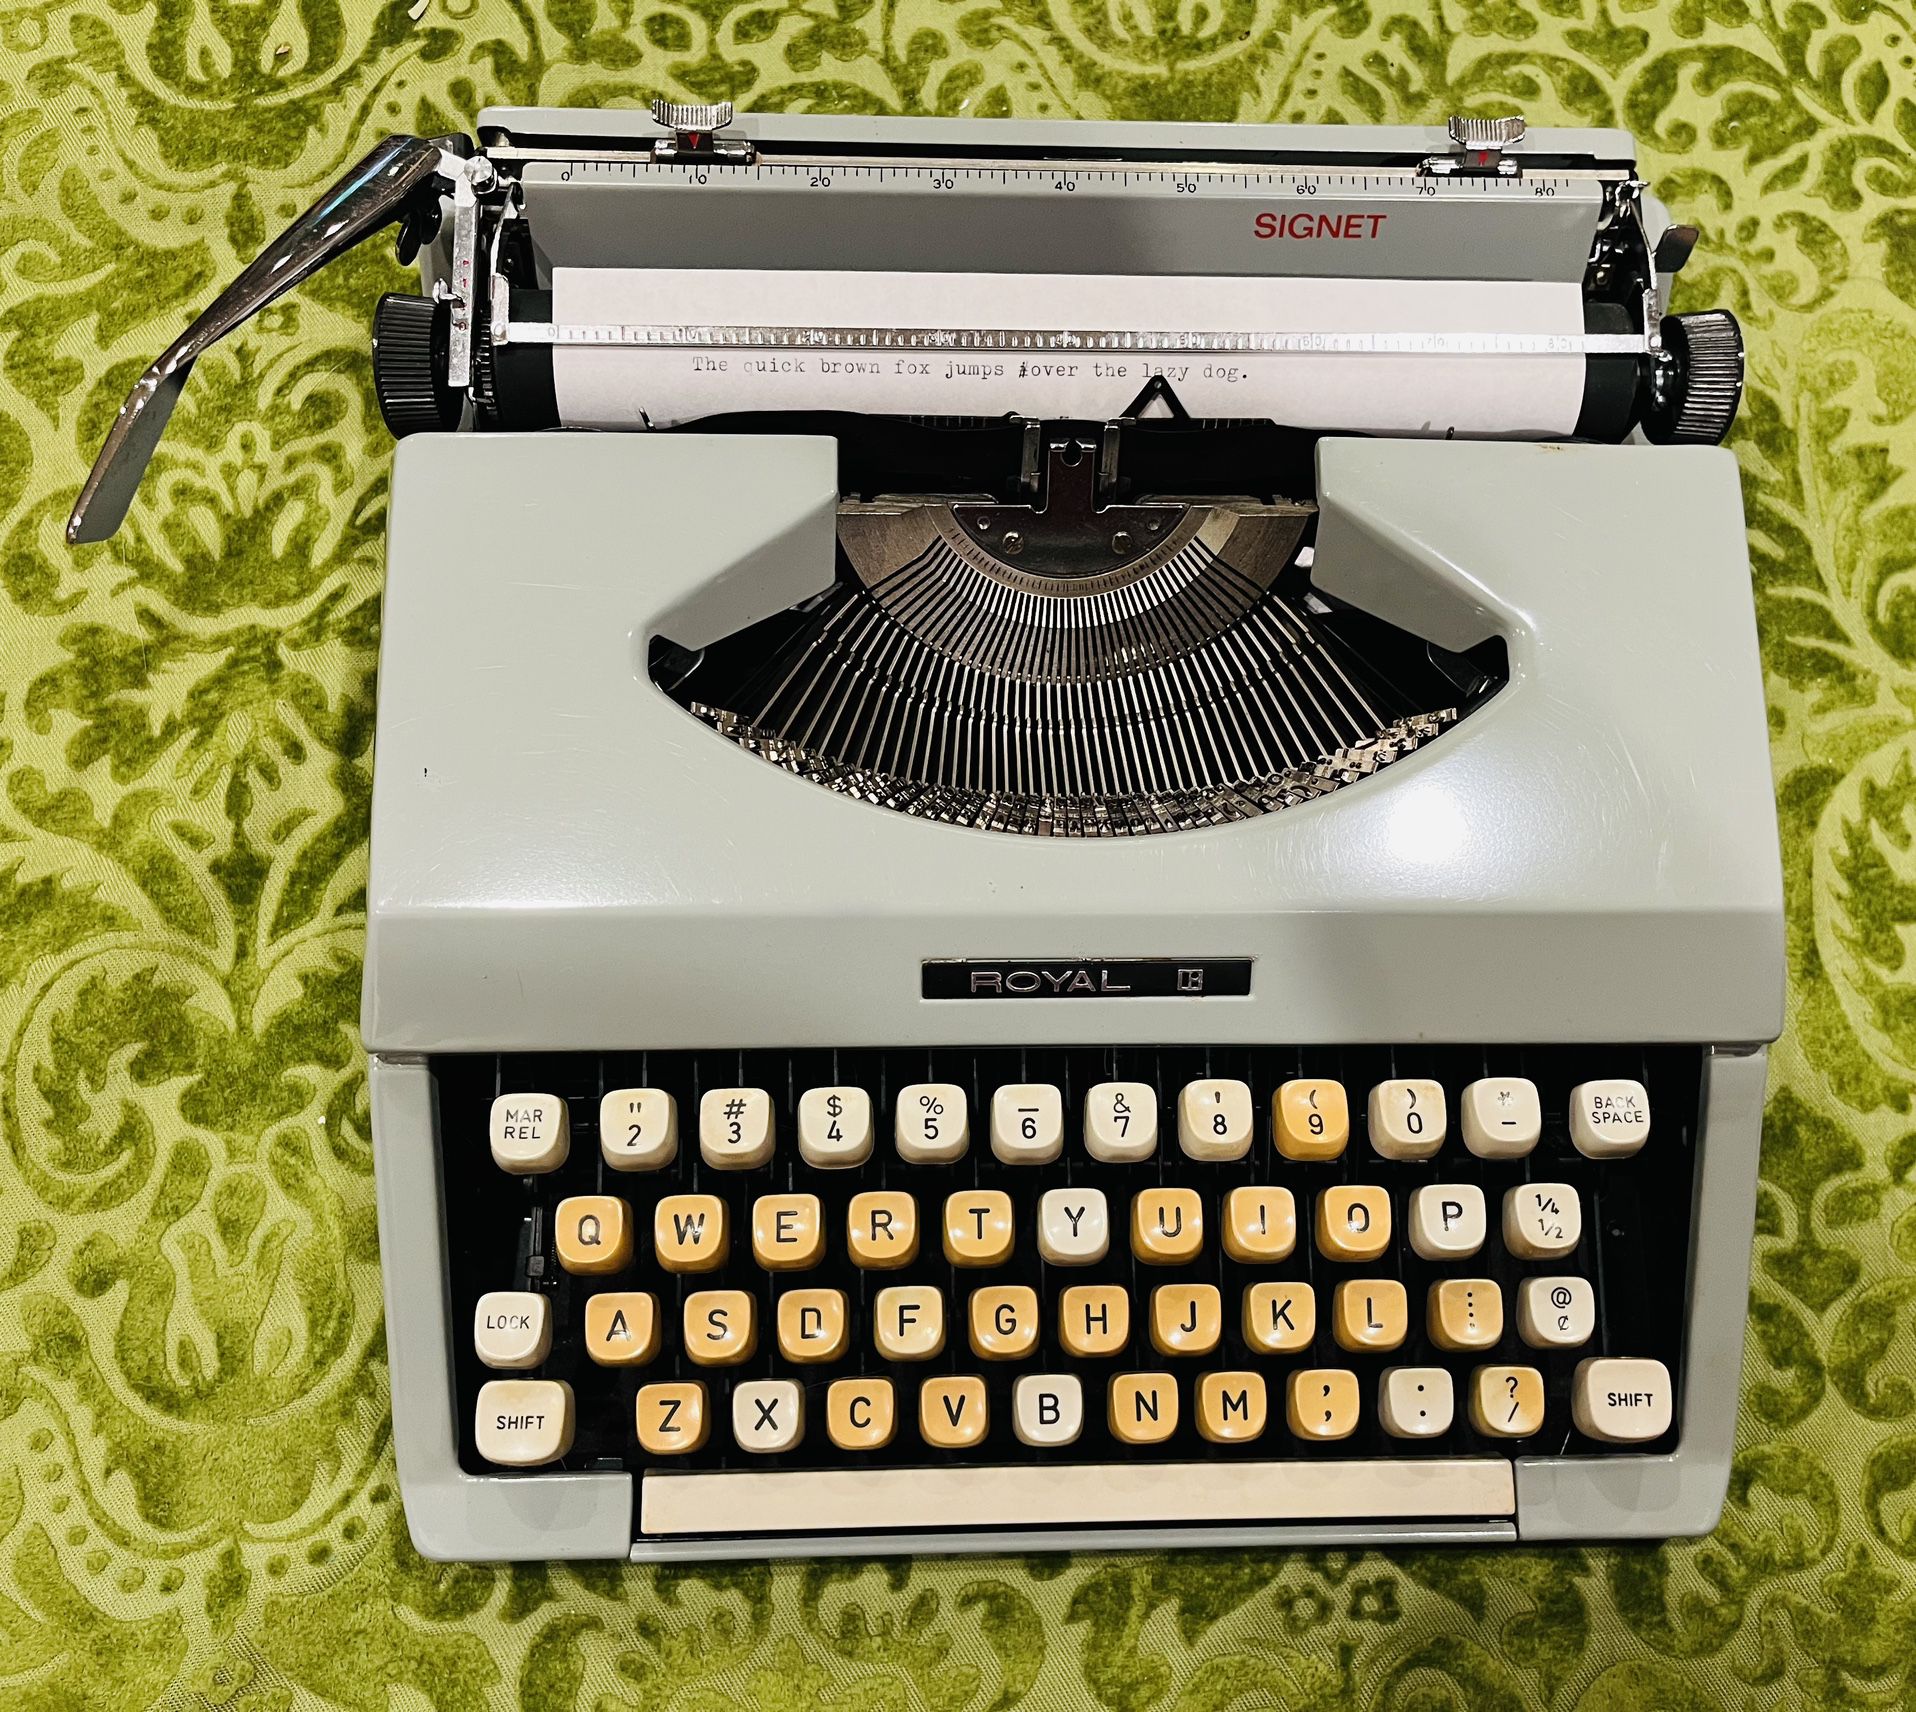 Royal Signet typewriter- Types Well